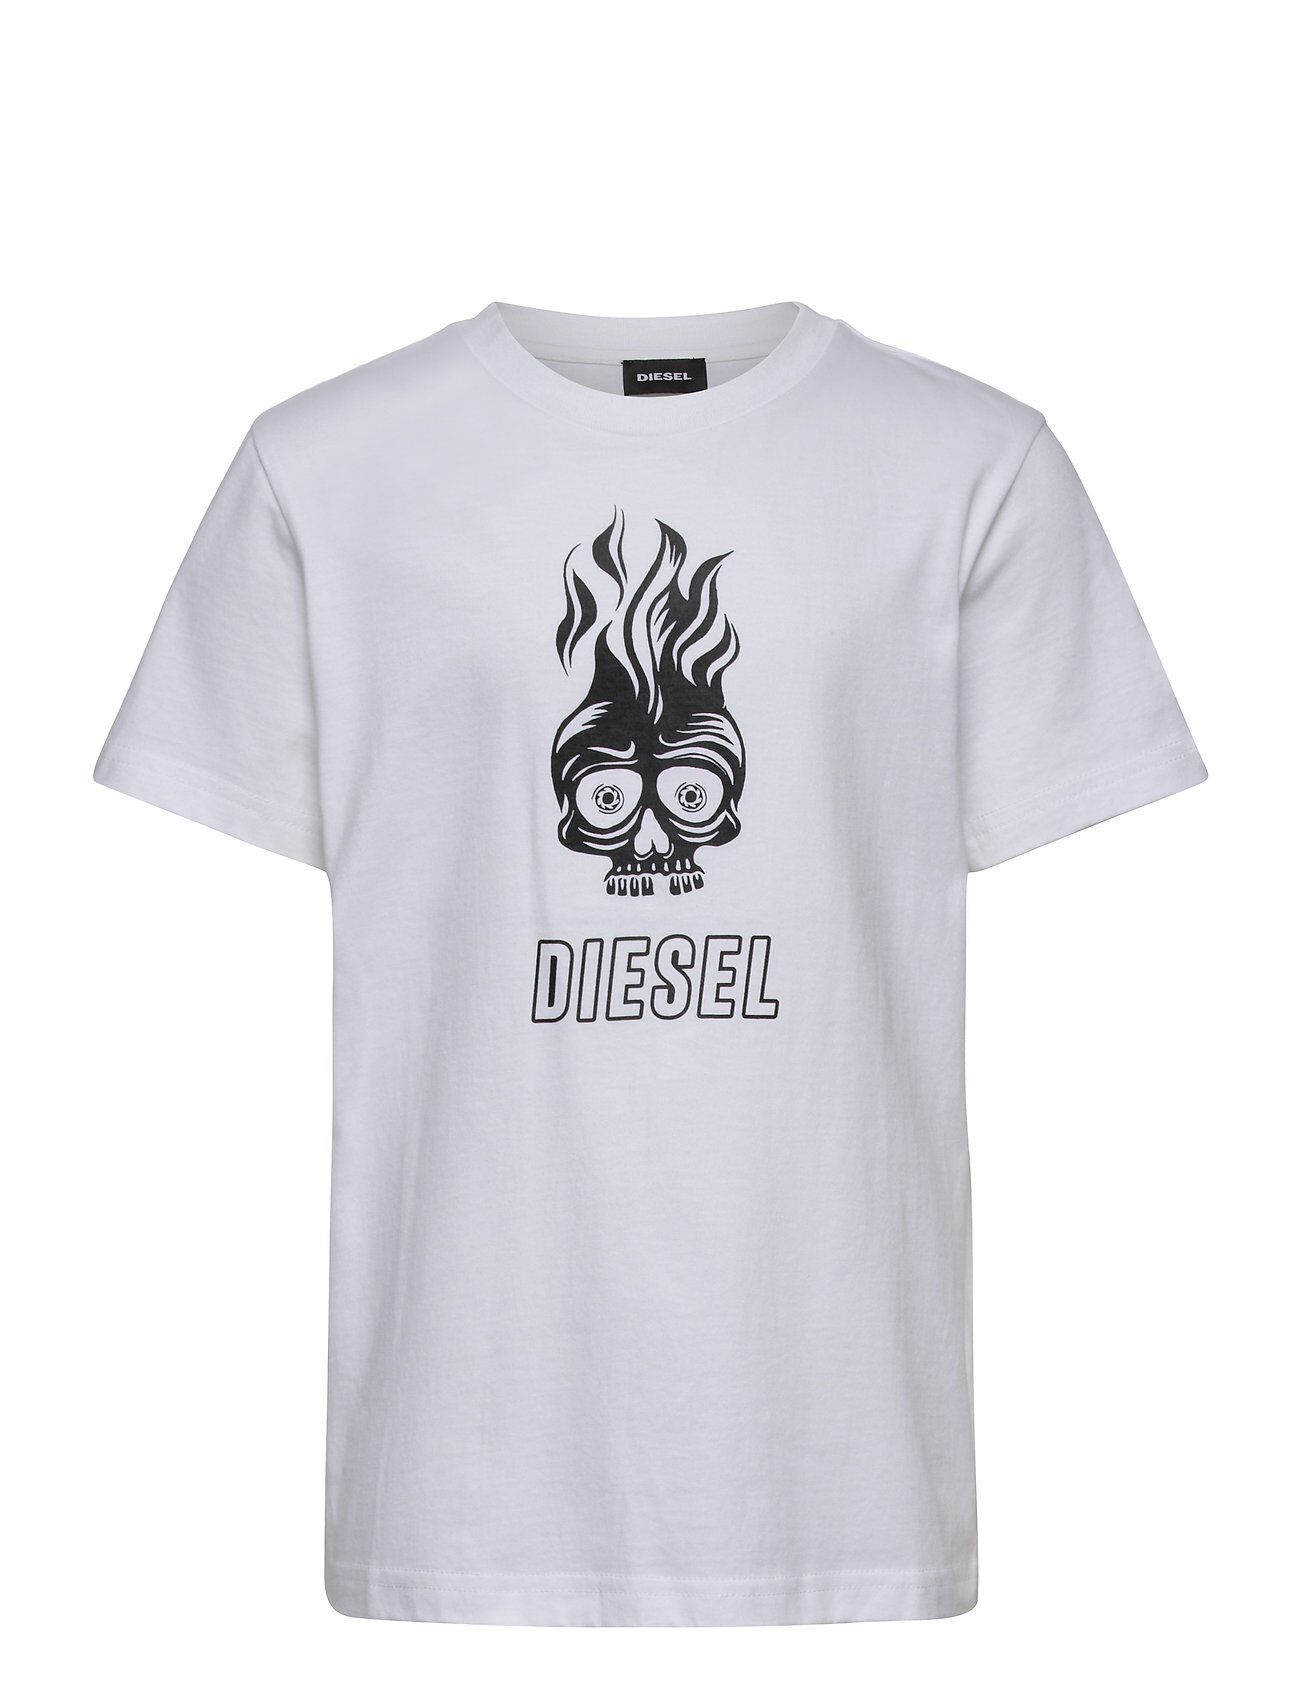 Diesel Tusilywq T-Shirt T-shirts Short-sleeved Hvit Diesel